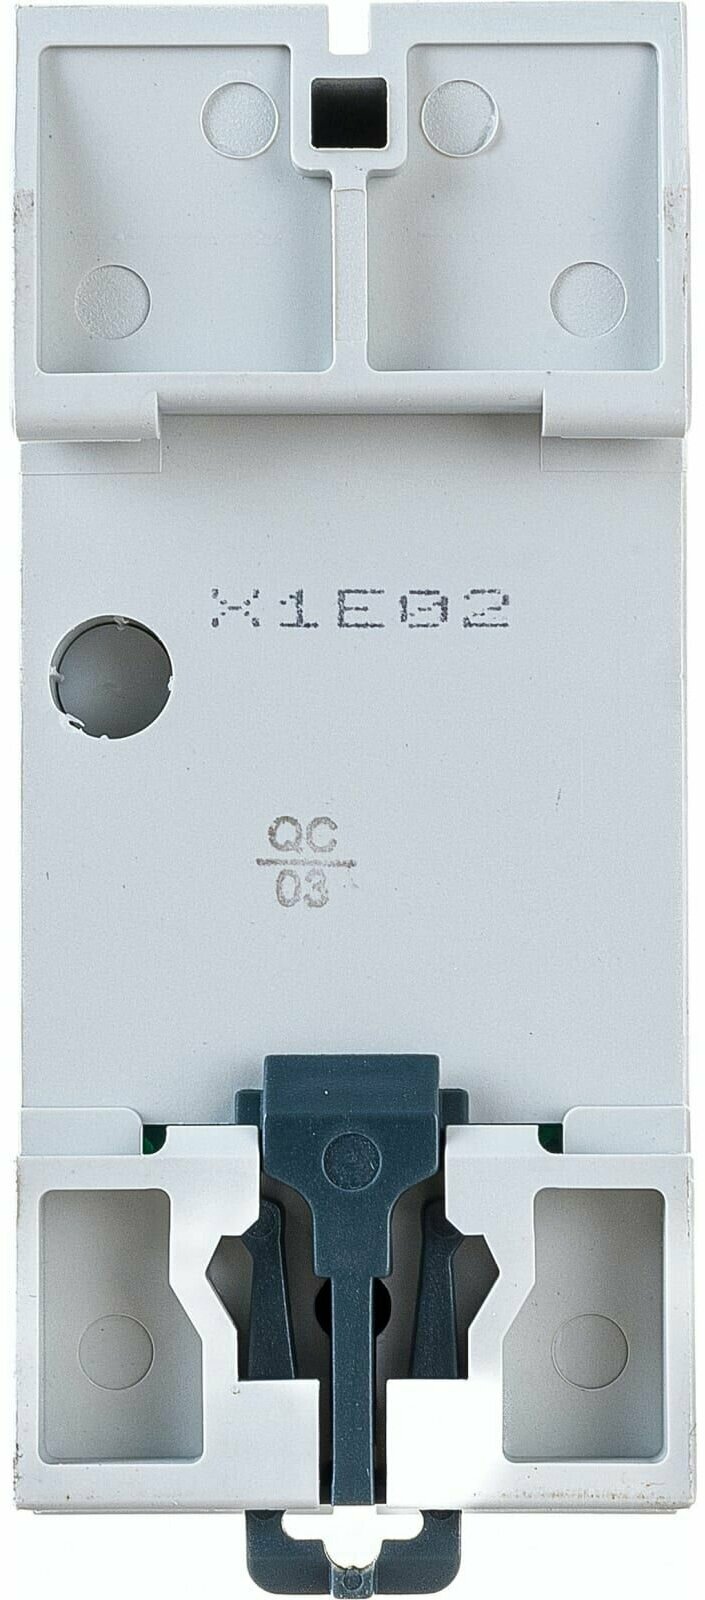 Выключатель дифференциальный (УЗО) ВД1-63 2п 25А 30мА тип AC GENERICA | код. MDV15-2-025-030 | IEK ( 1шт. )